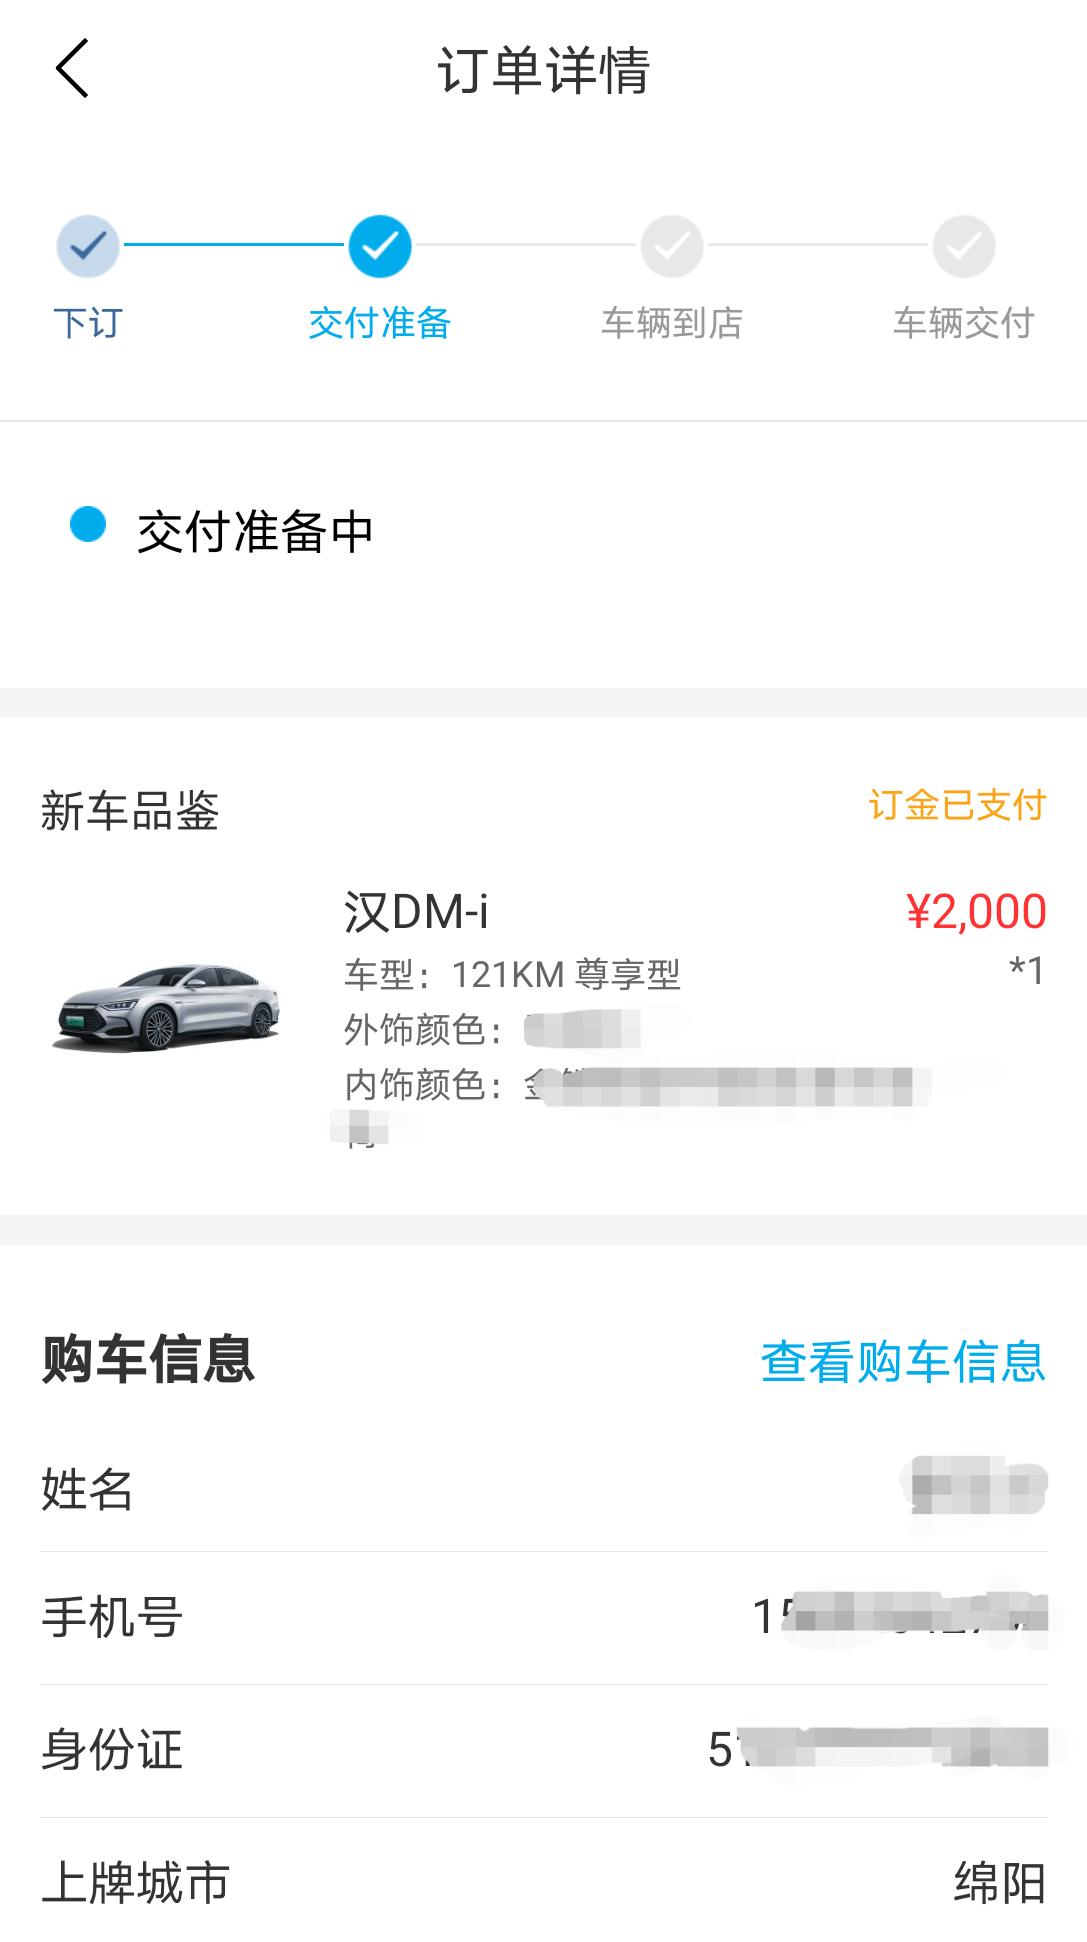 比亚迪汉DM 在比亚迪汽车app下订汉dmi尊享，交了2000订金。4S店要求再交18000给店里，帮忙排号。请问其他地